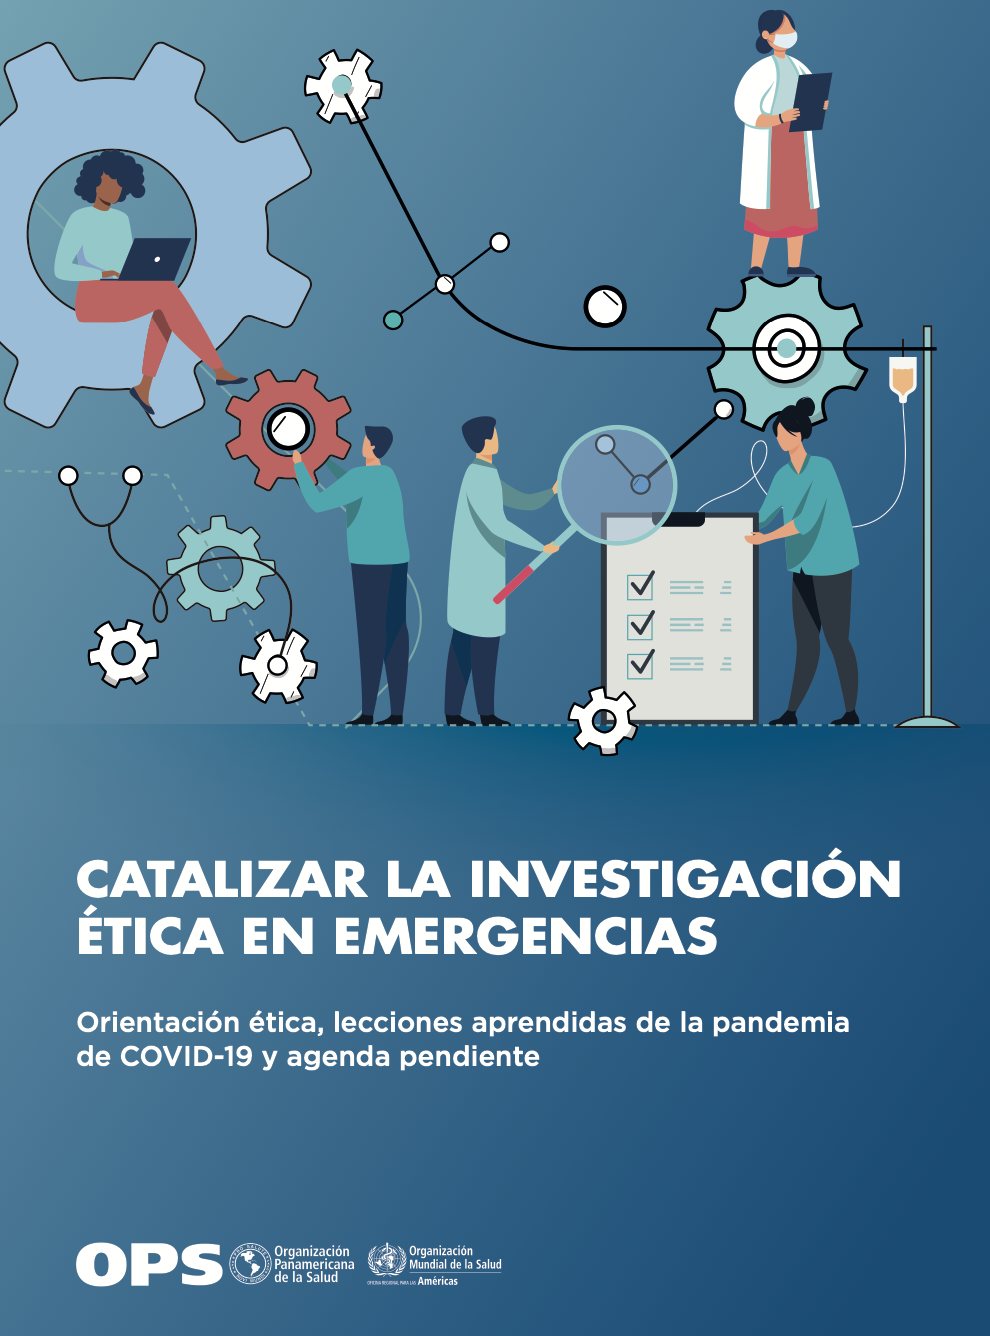 Catalizar la investigación ética en emergencias. Orientación ética, lecciones aprendidas de la pandemia de COVID-19 y agenda pendiente